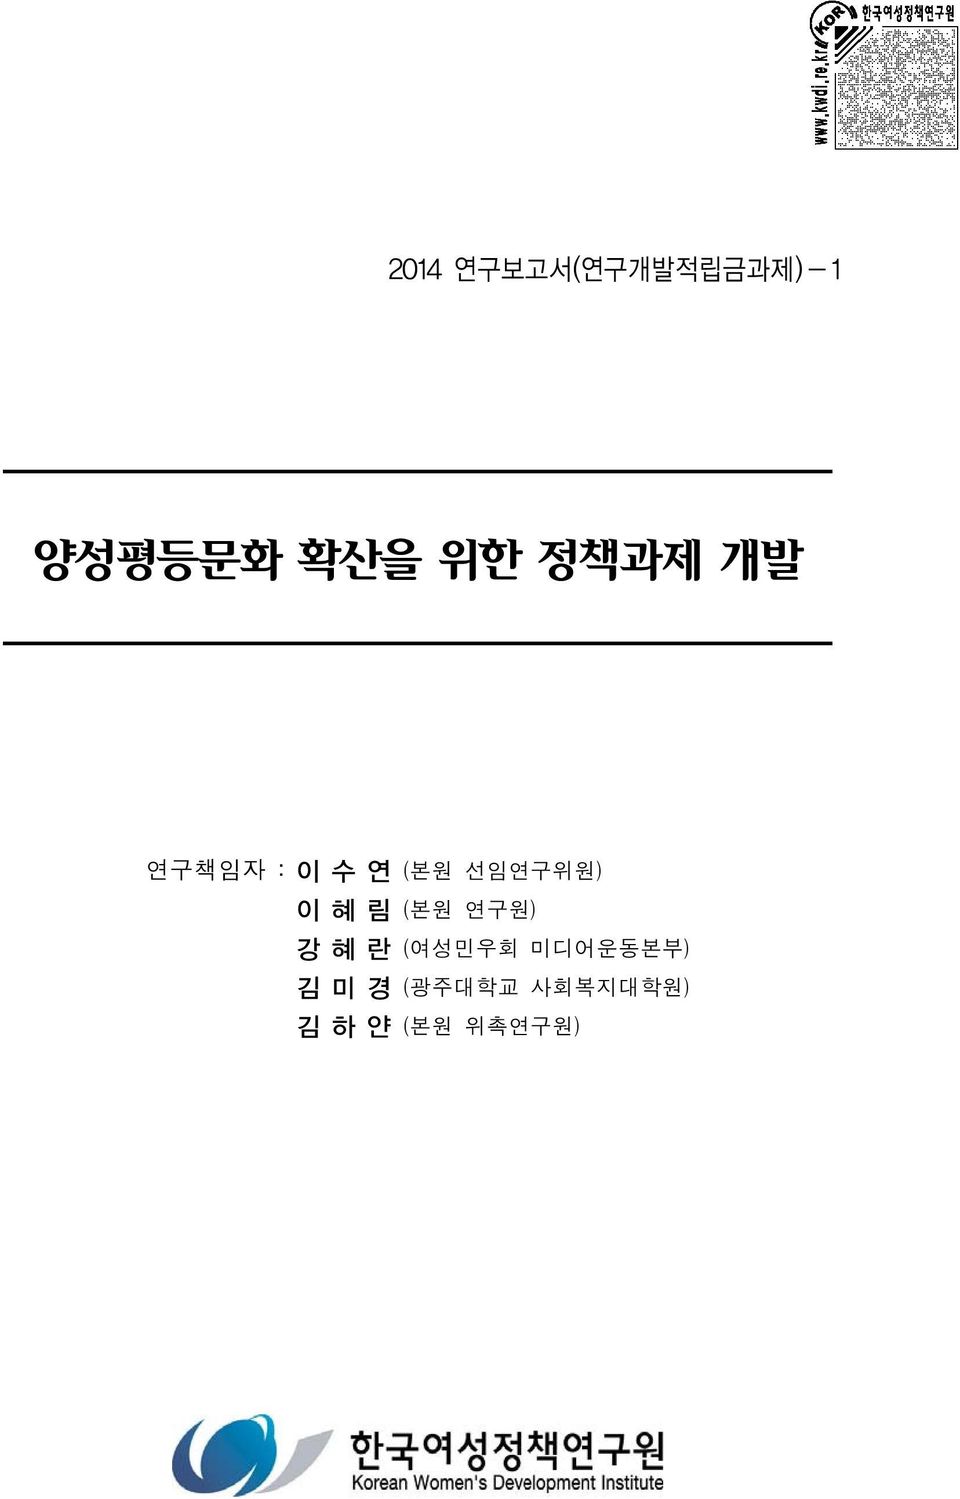 이혜림 (본원 연구원) 강혜란 (여성민우회 미디어운동본부)